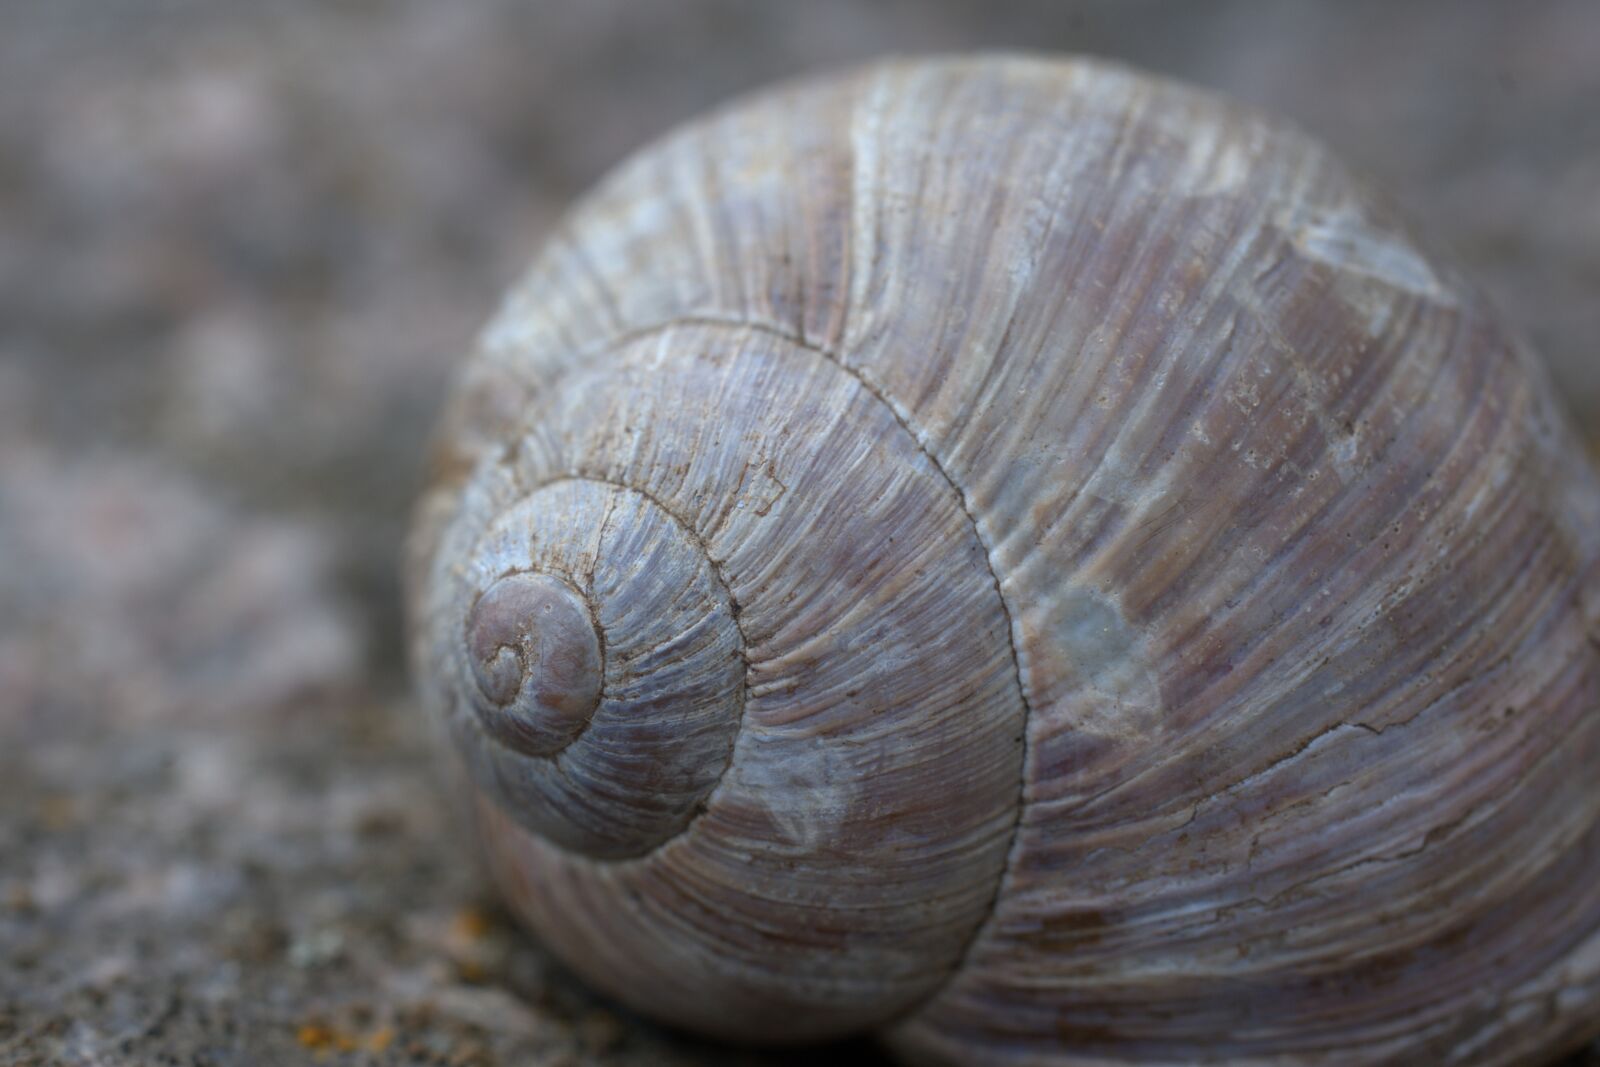 Sony FE 50mm F2.8 Macro sample photo. Snail, shell, slowly photography